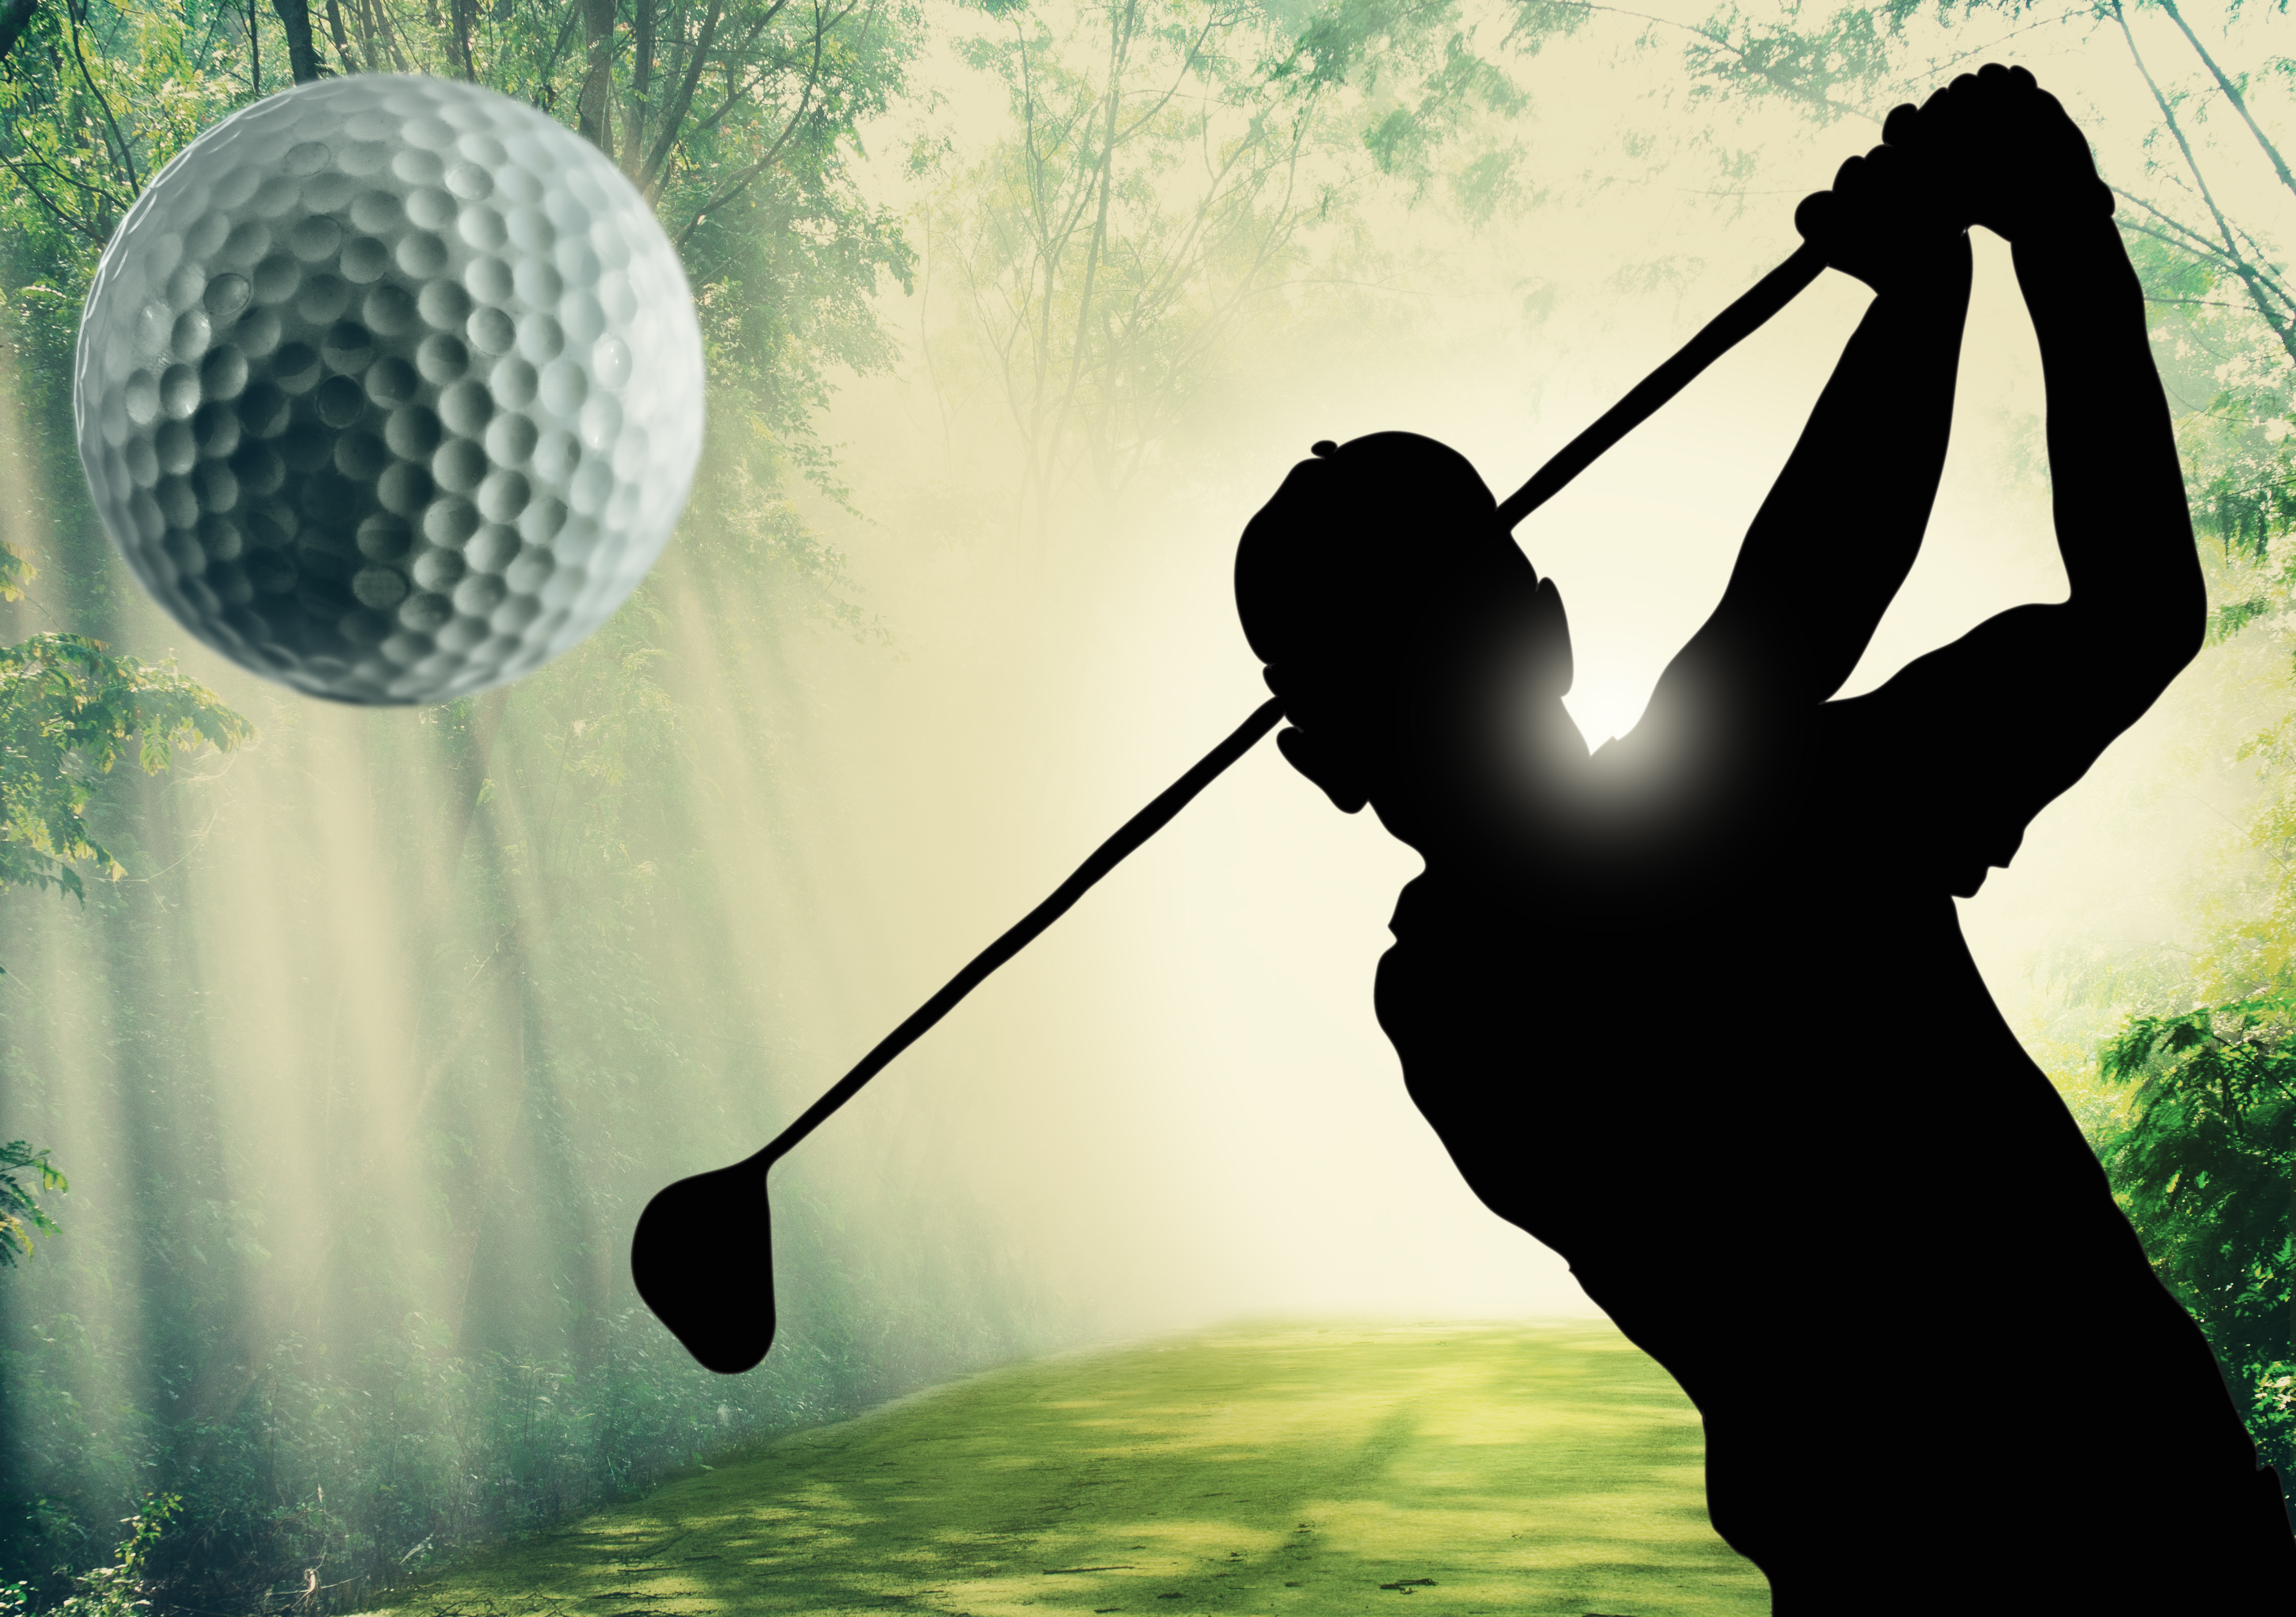 uploads/slider/20150923/golfer-putting-a-ball-on-the-green_GJMeZ5B_.jpg